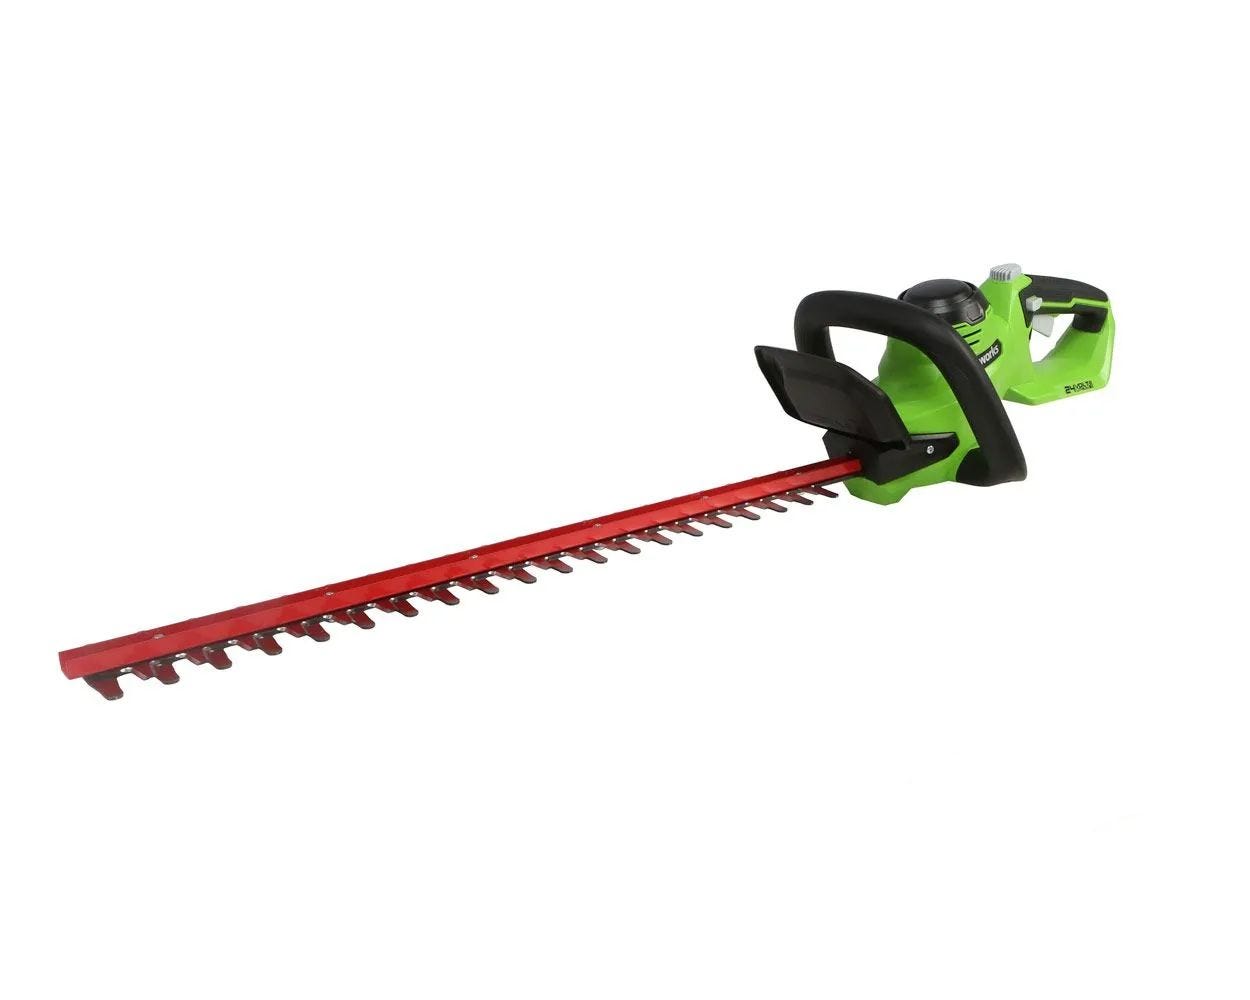 24V 22-inch Hedge Trimmer (Tool Only) | Greenworks